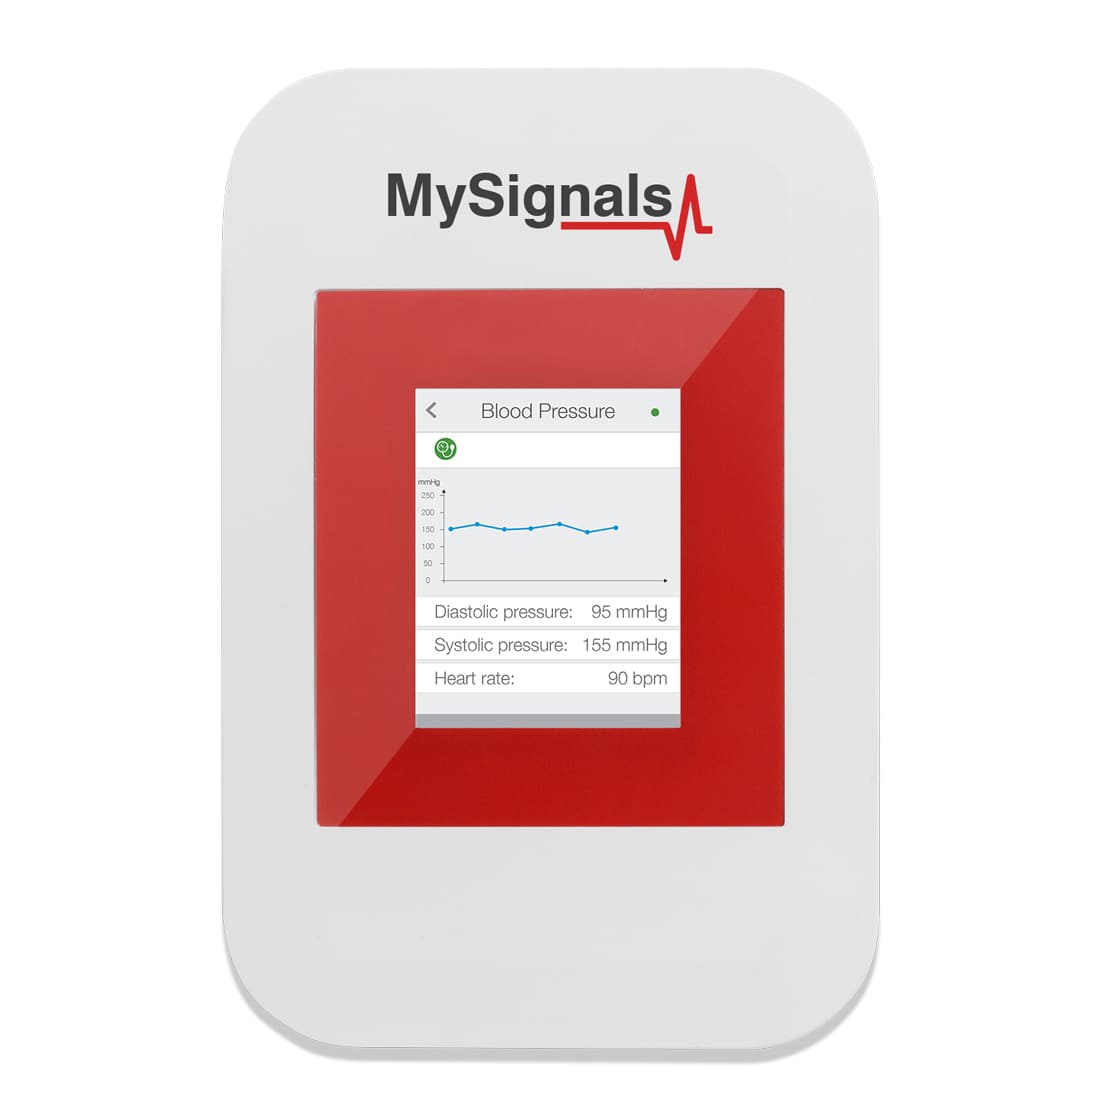 High blood pressure visualized in MySignals platform